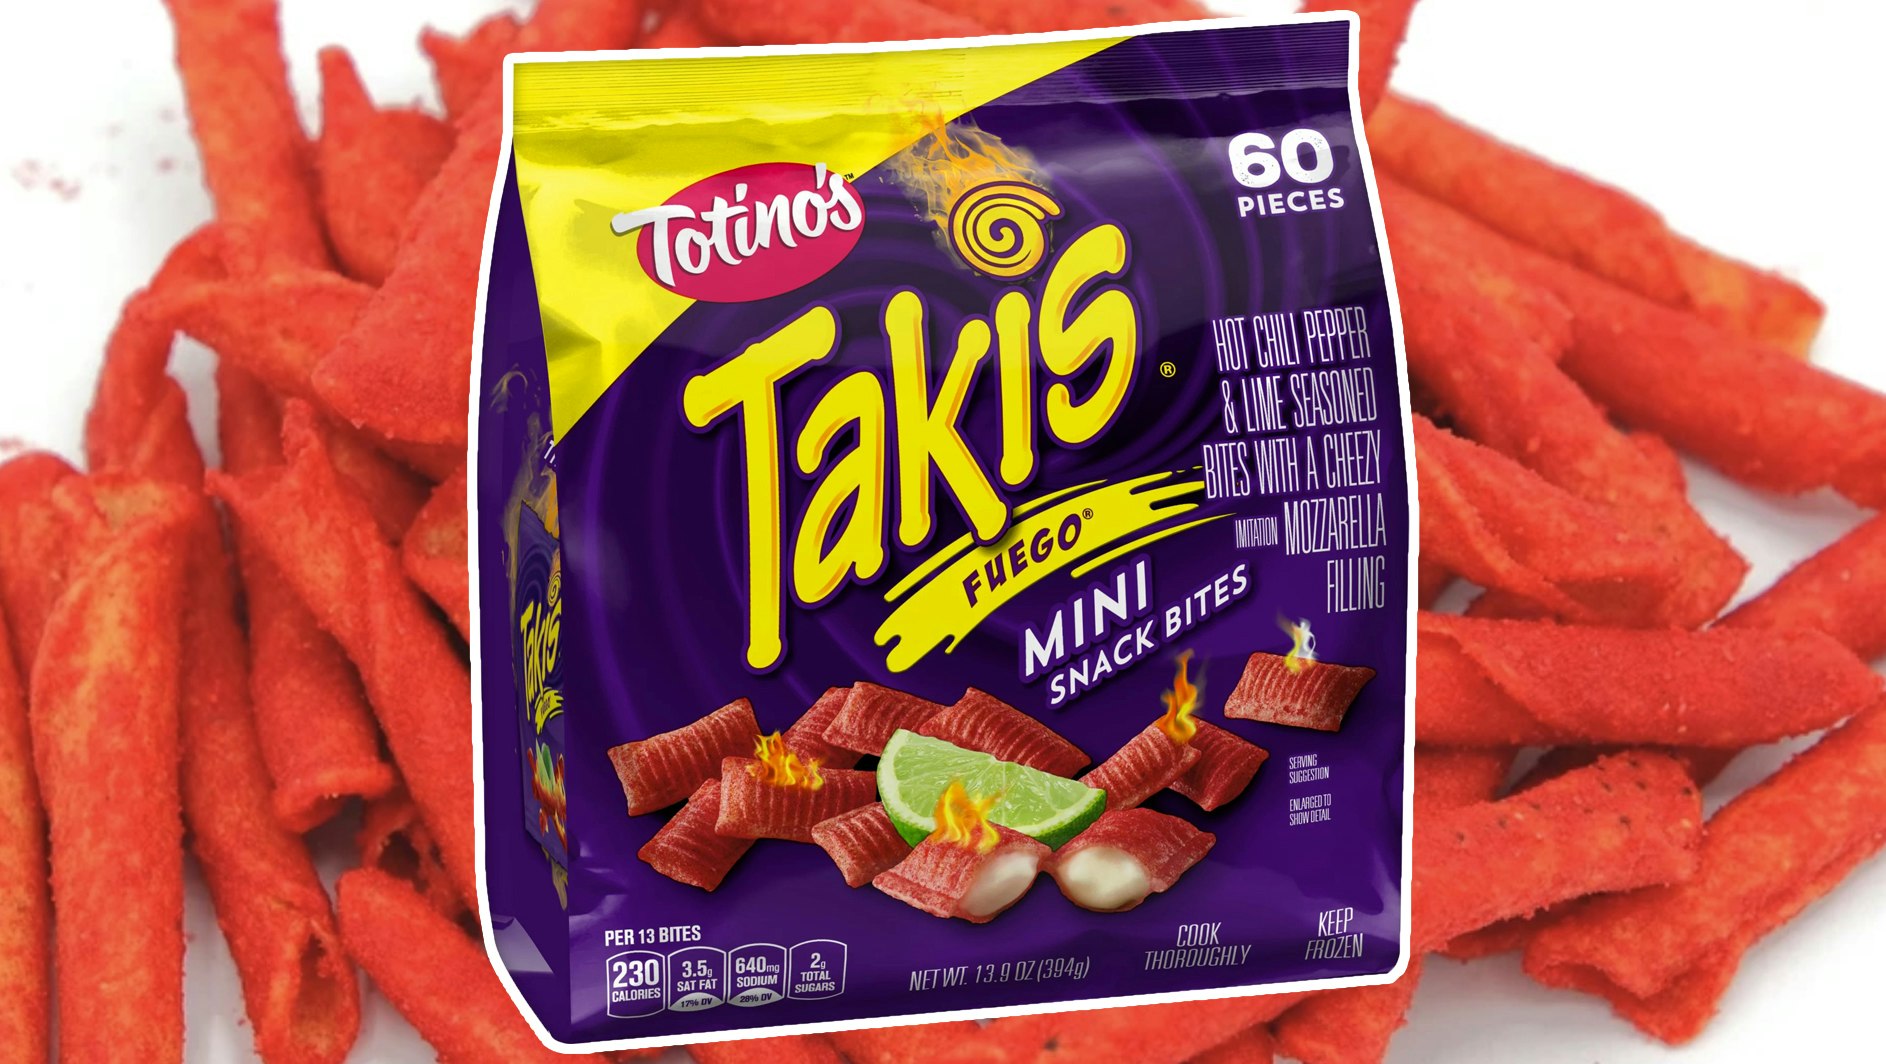 Totino's Is Releasing Takis Fuego Mini Mozzarella Bites